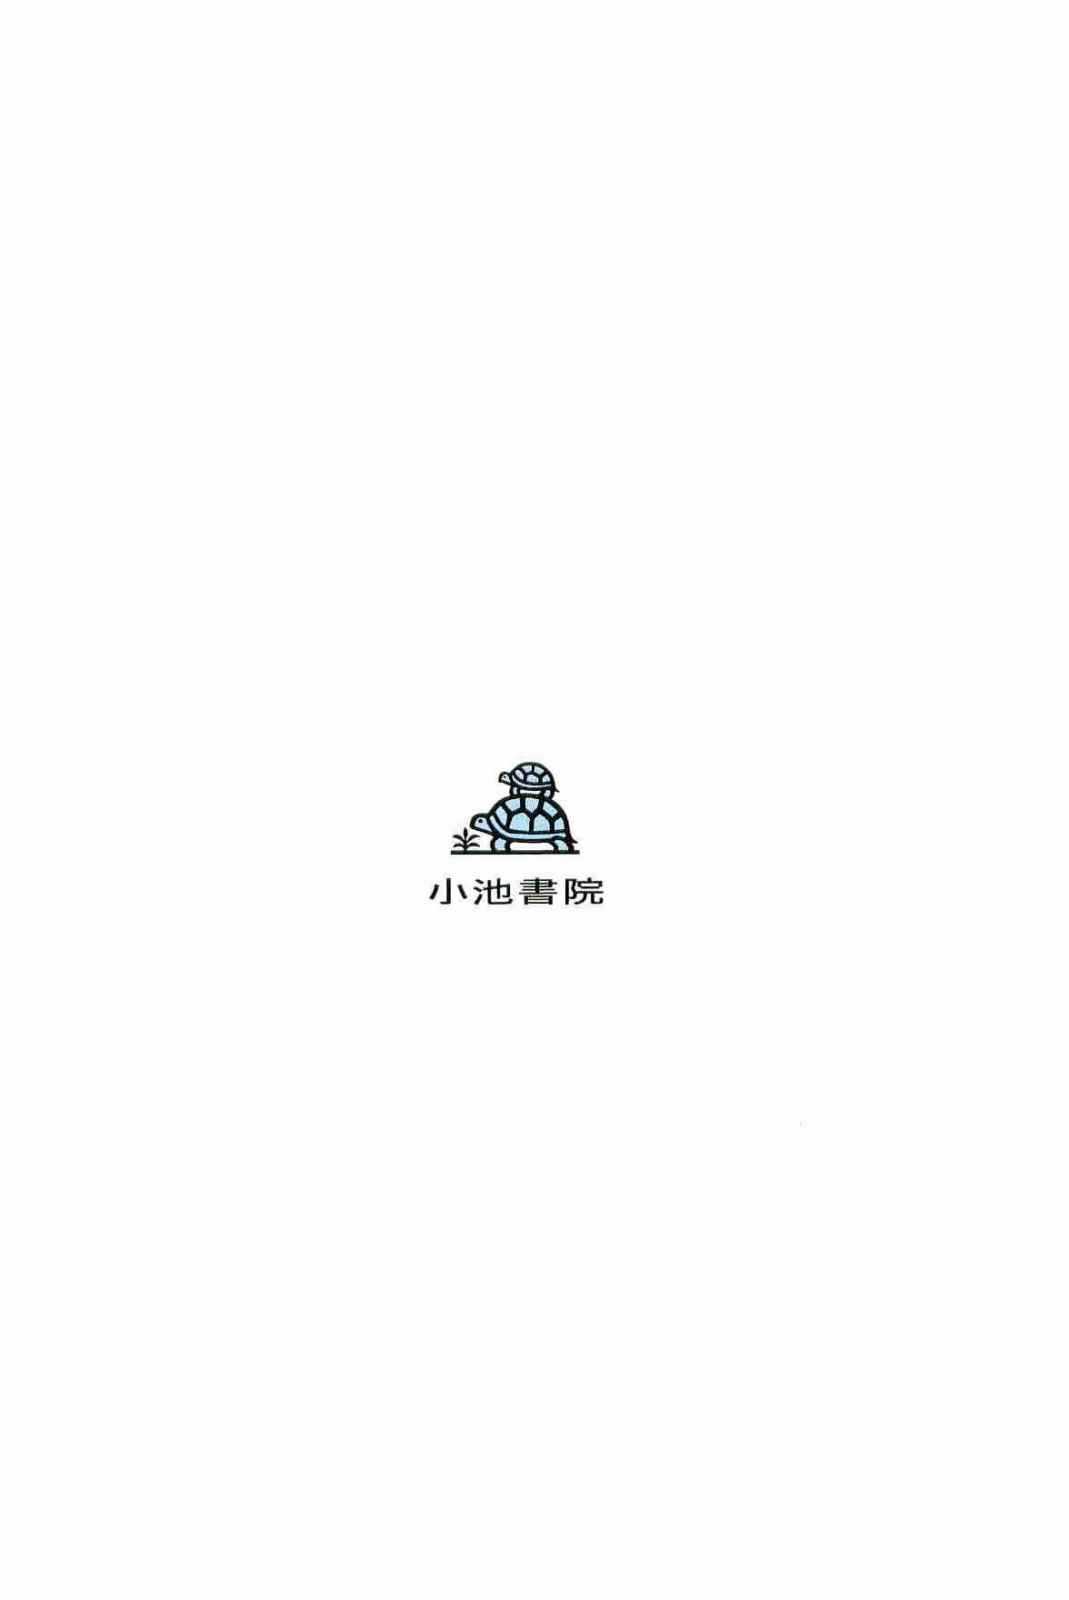 [Koike Kazuo, Kojima Goseki] Hanzou no Mon Vol.13 [小池一夫, 小島剛夕] 半蔵の門 第13巻